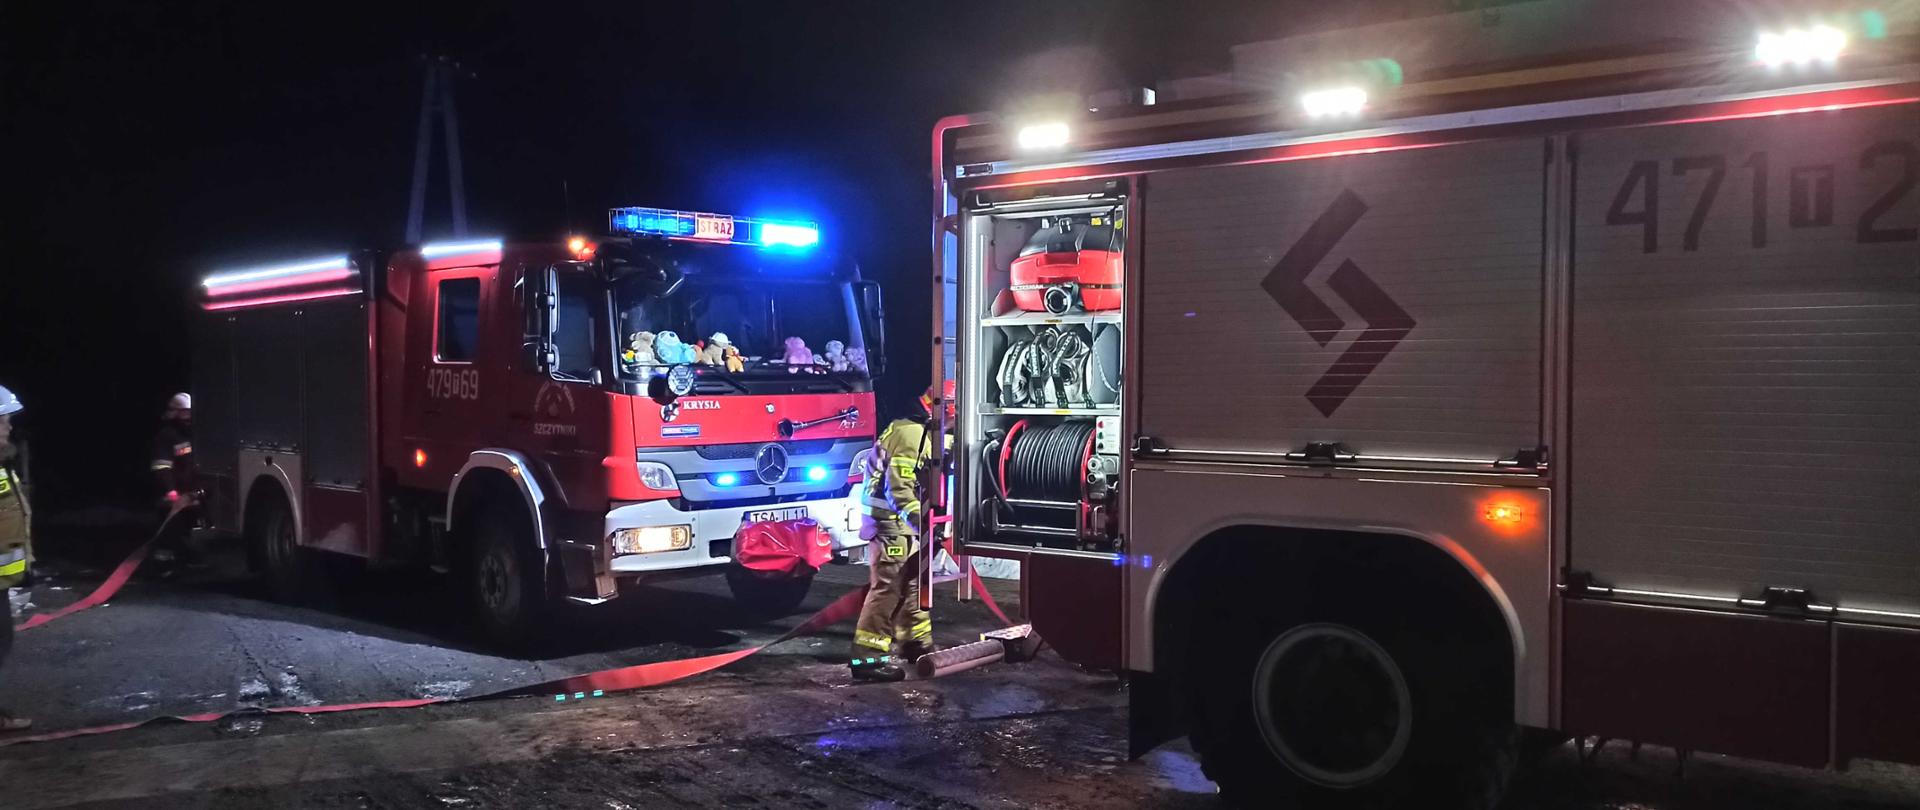 Opis Alternatywny: zdjęcie zrobione w nocy. Na zdjęciu widać dwa samochody strażackie i rozwinięte węże strażackie. Obok samochodów strażackich widać dwóch strażaków, którzy obsługują samochody.